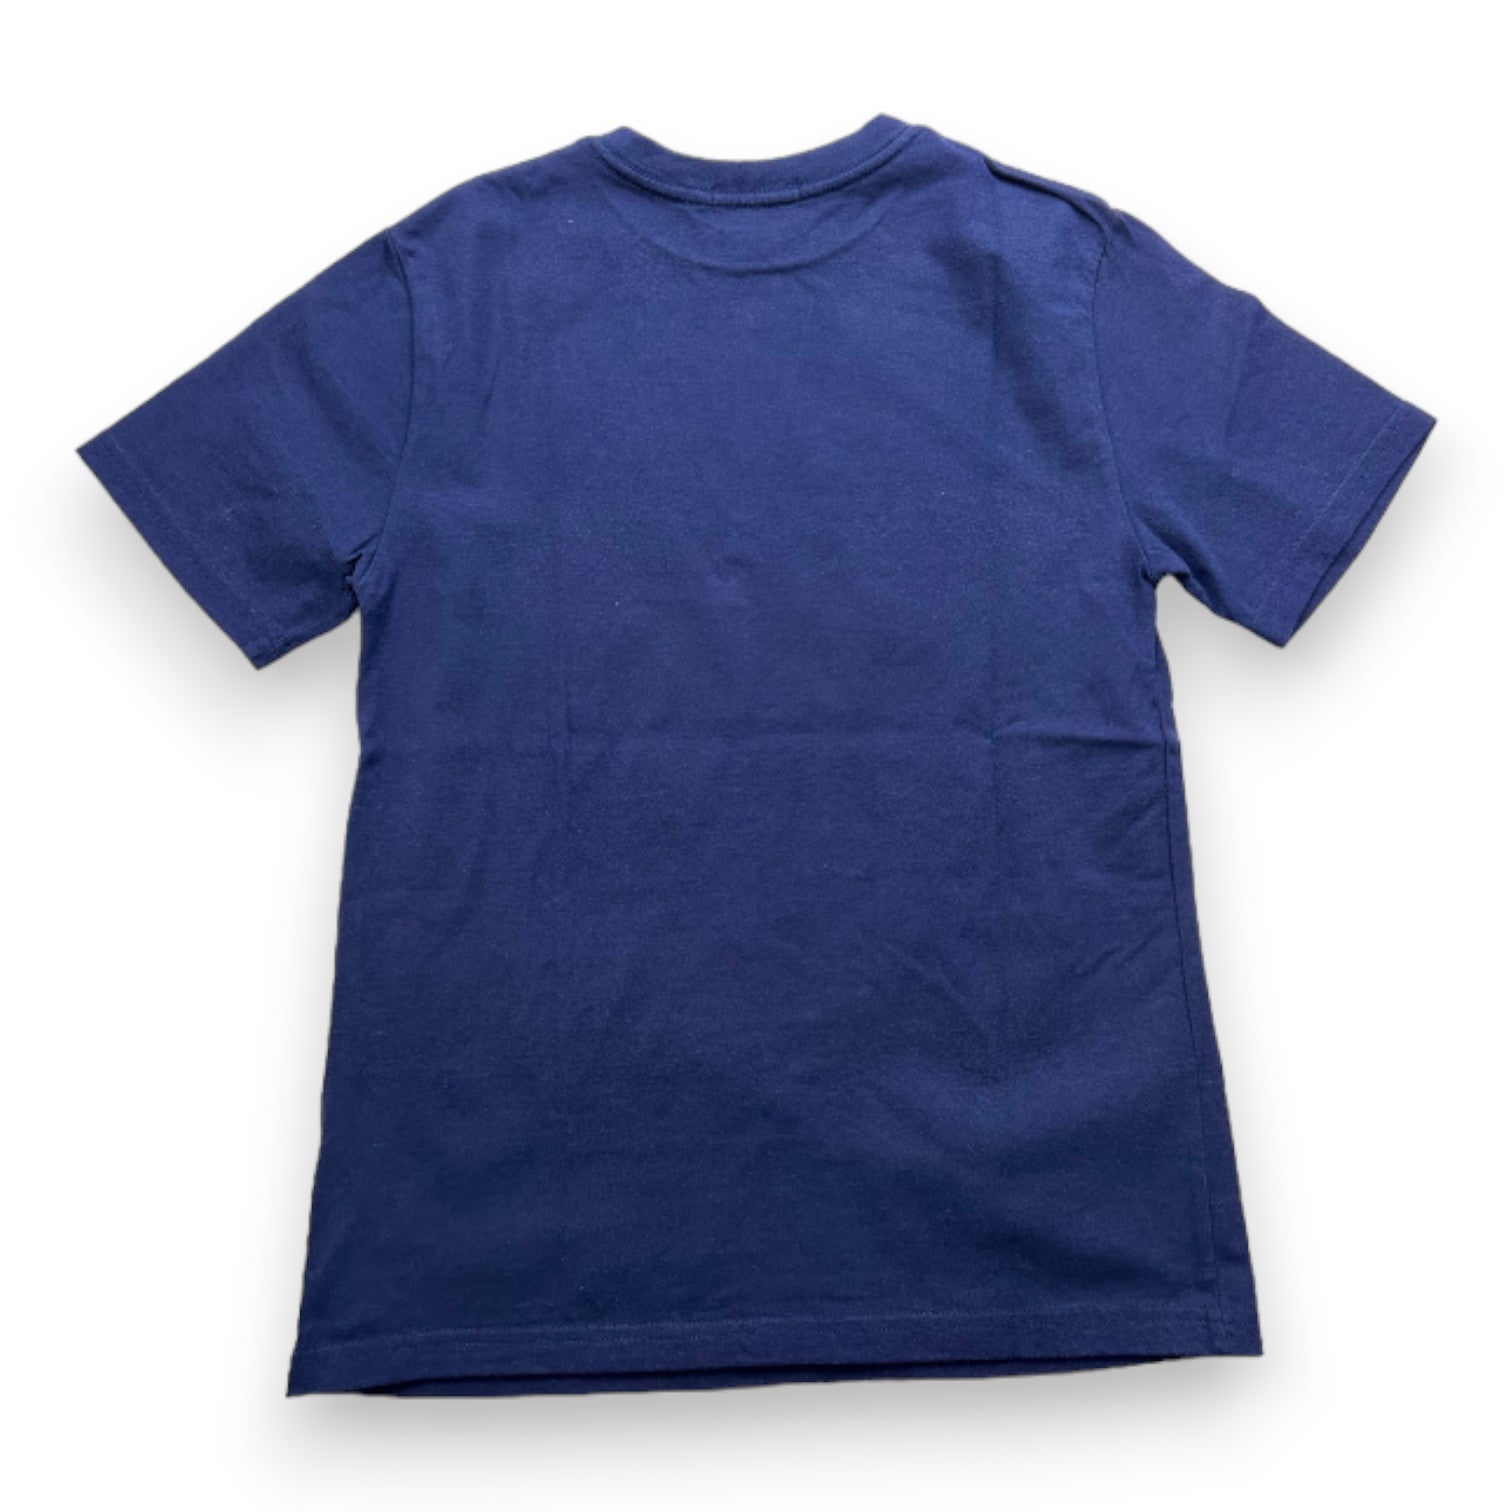 RALPH LAUREN - T-shirt bleu marine à manches courtes - 10 ans